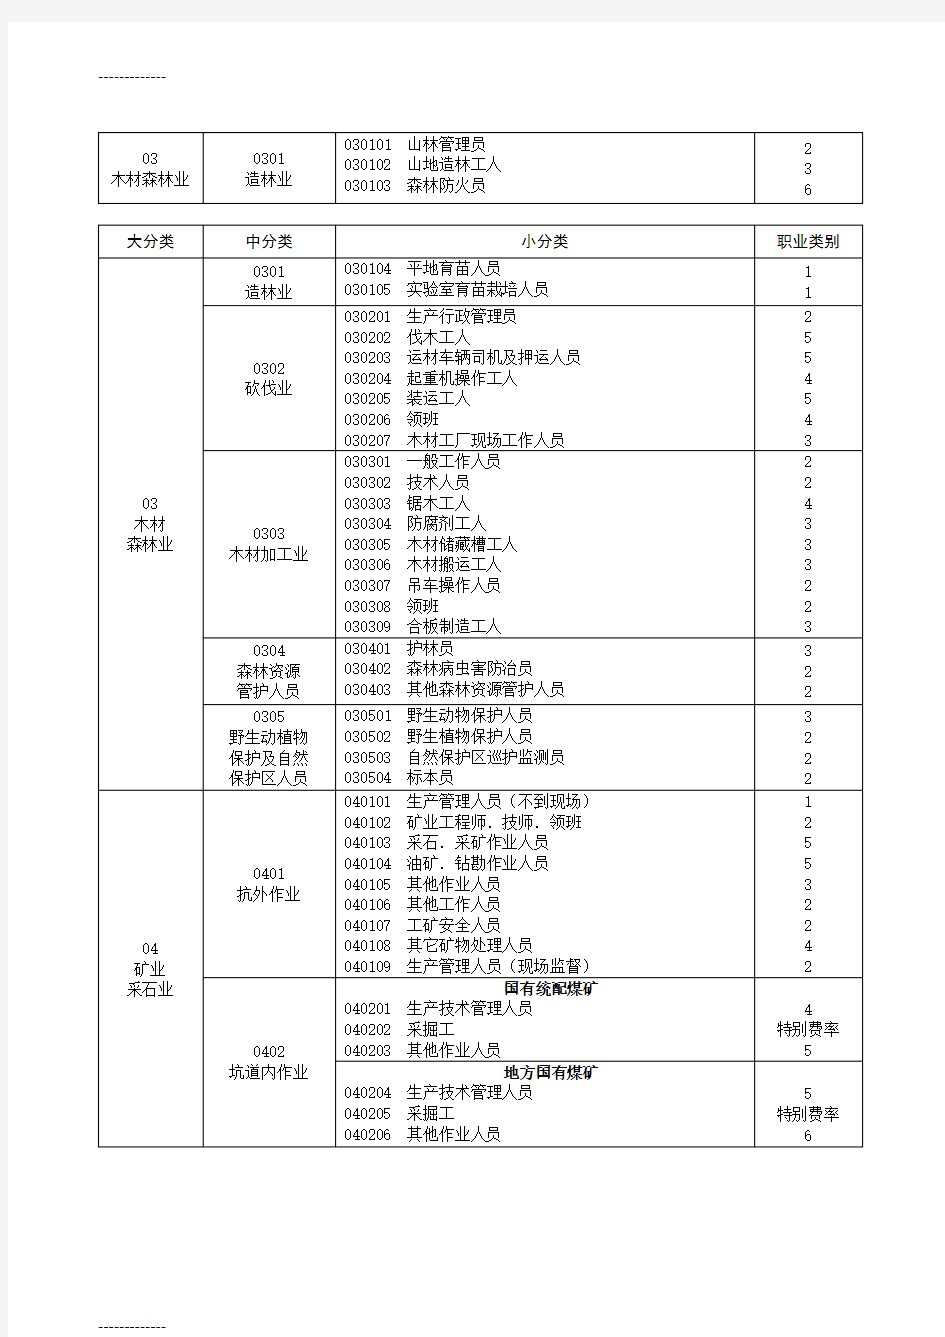 [整理]中国人民保险公司意外伤害保险职业分类表